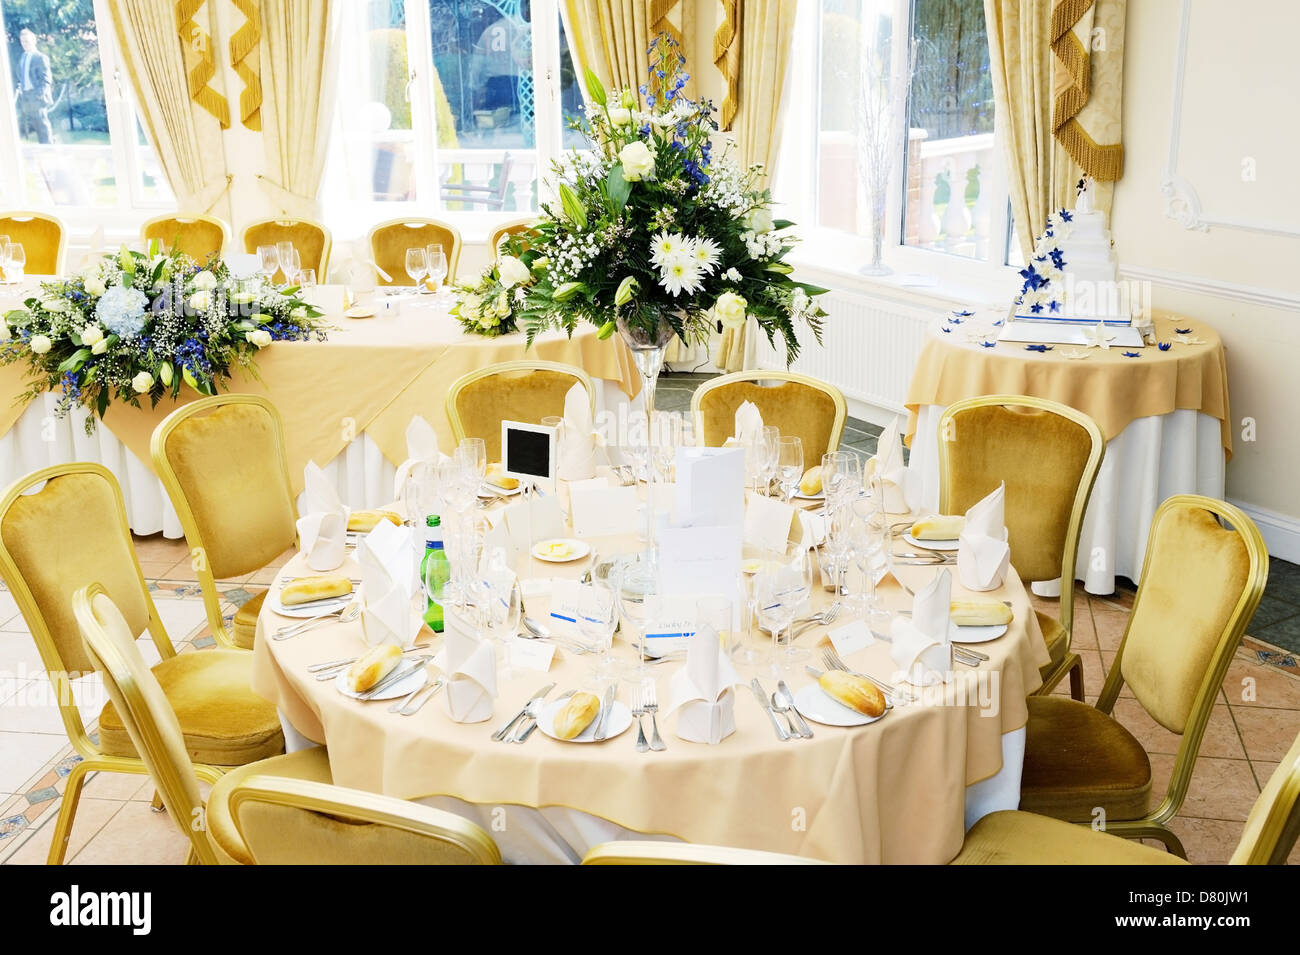 Décorations de table à votre réception de mariage avec des fleurs et des gâteaux Banque D'Images